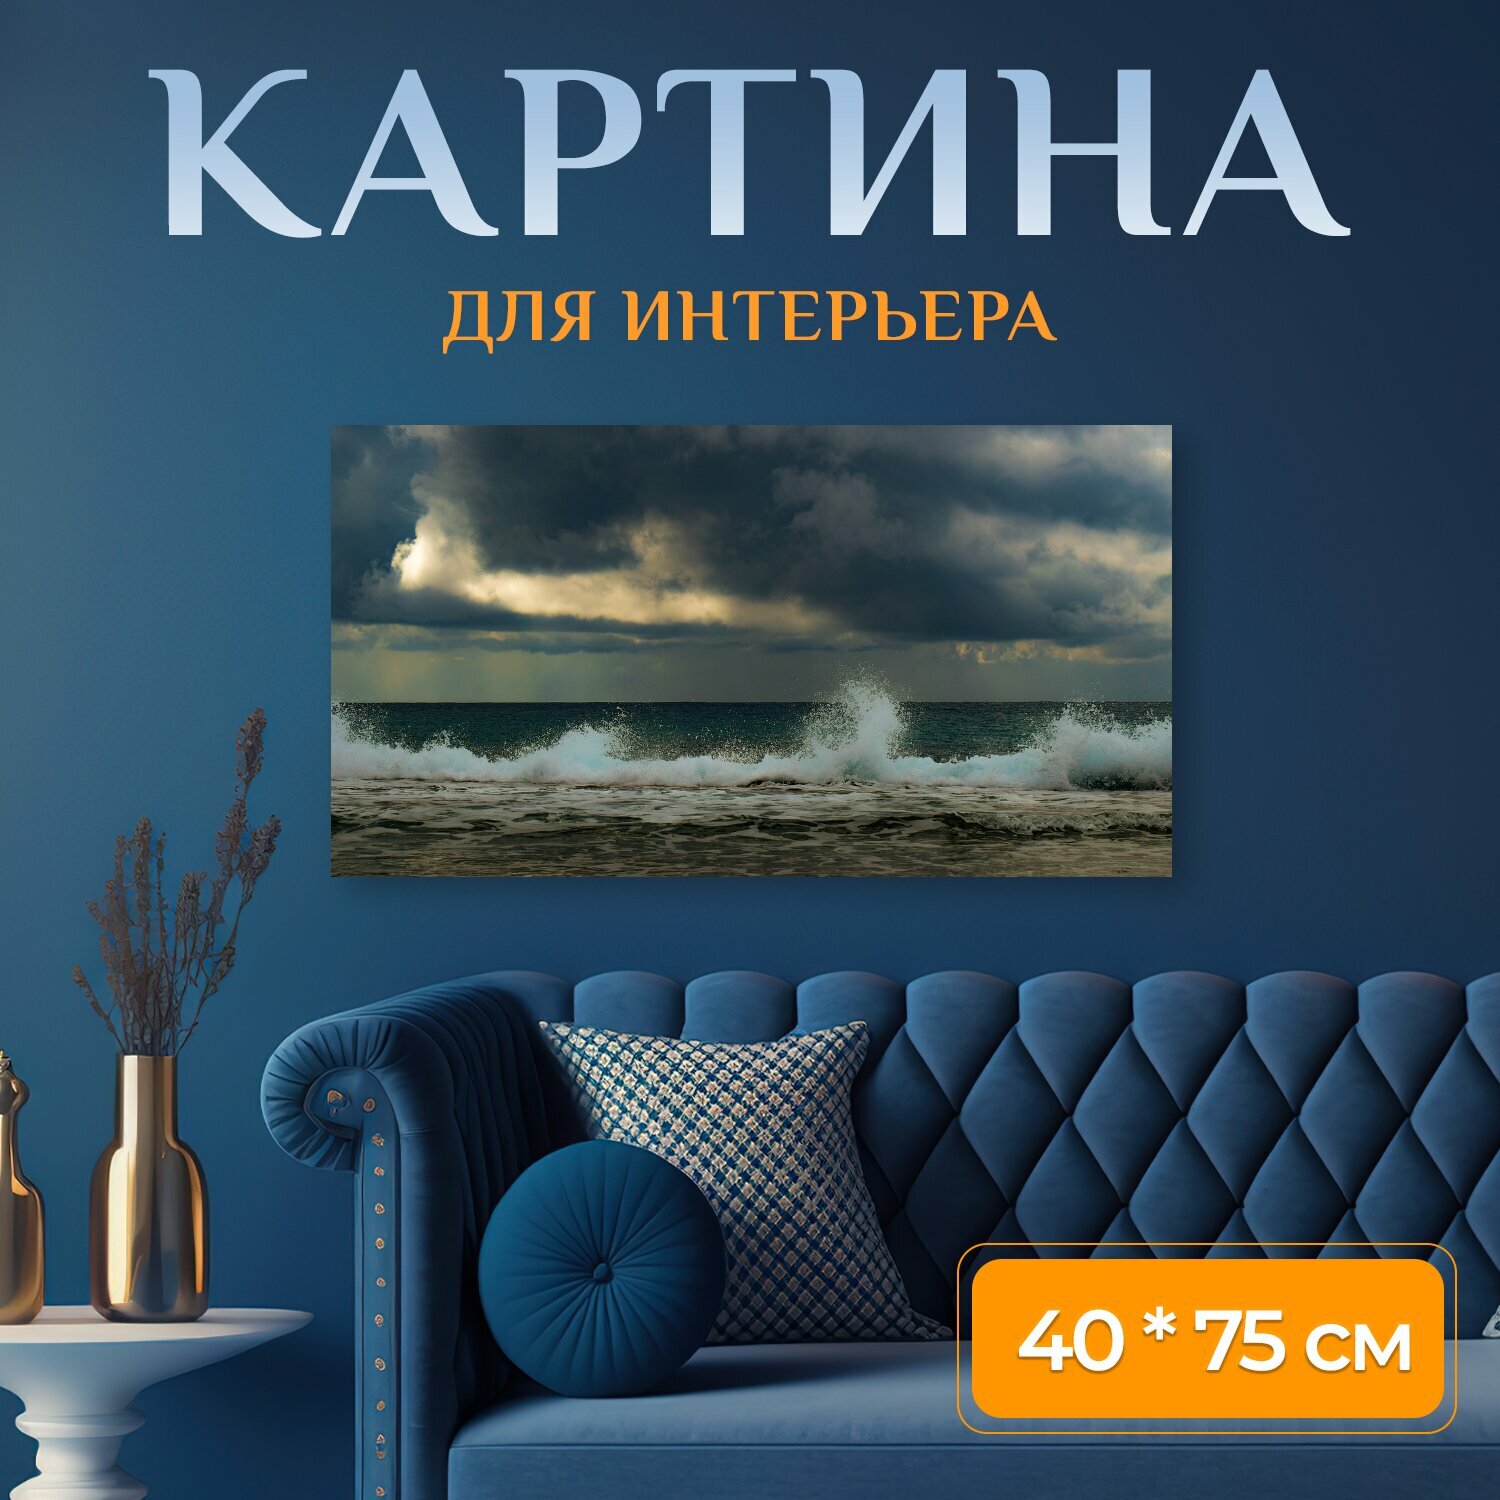 Картина на холсте "Пляж, море, волна" на подрамнике 75х40 см. для интерьера